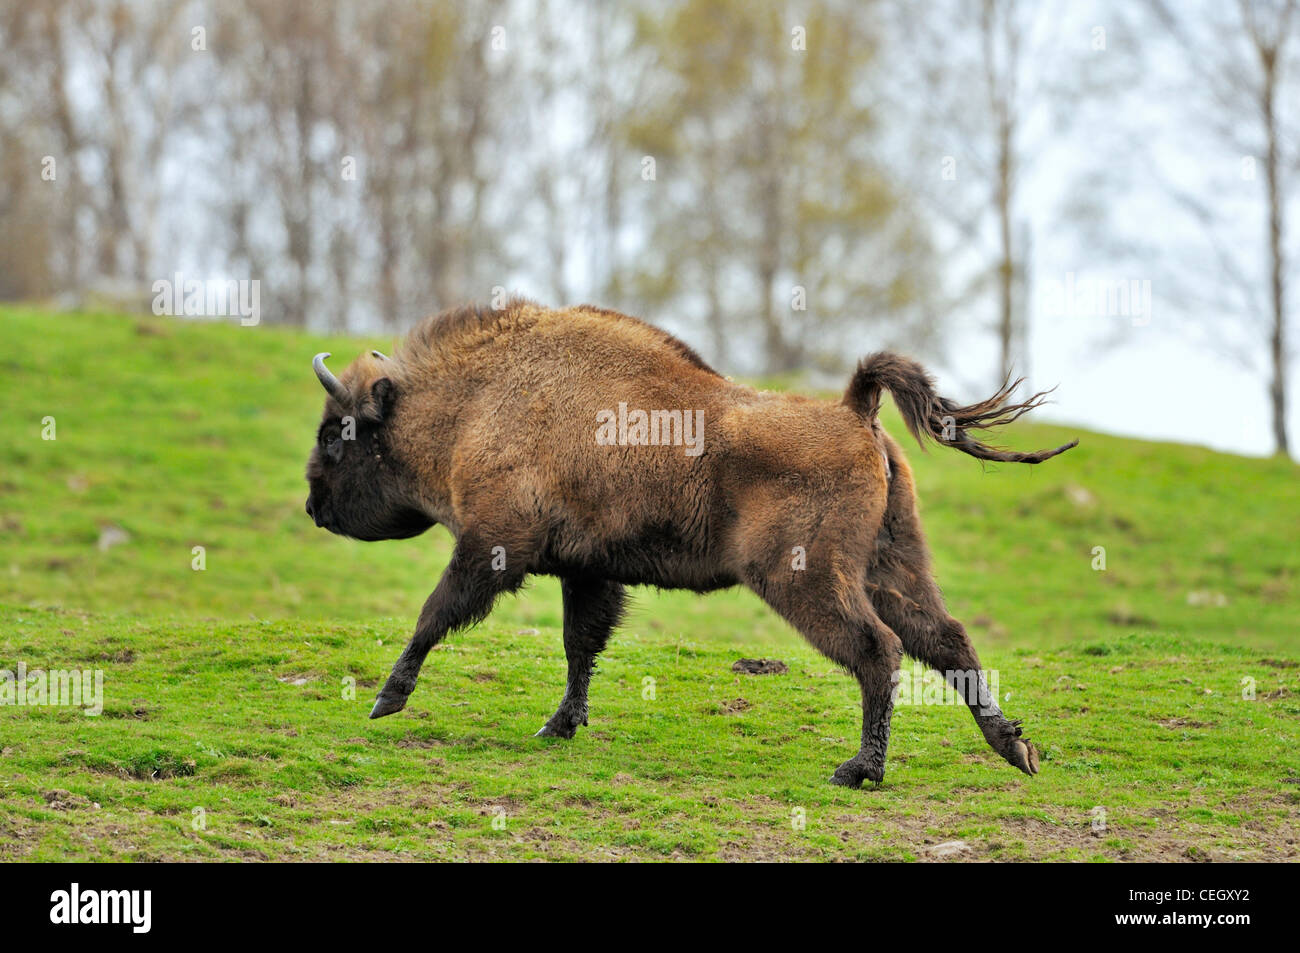 Wisent / European bison (Bison bonasus) running in grassland Stock Photo